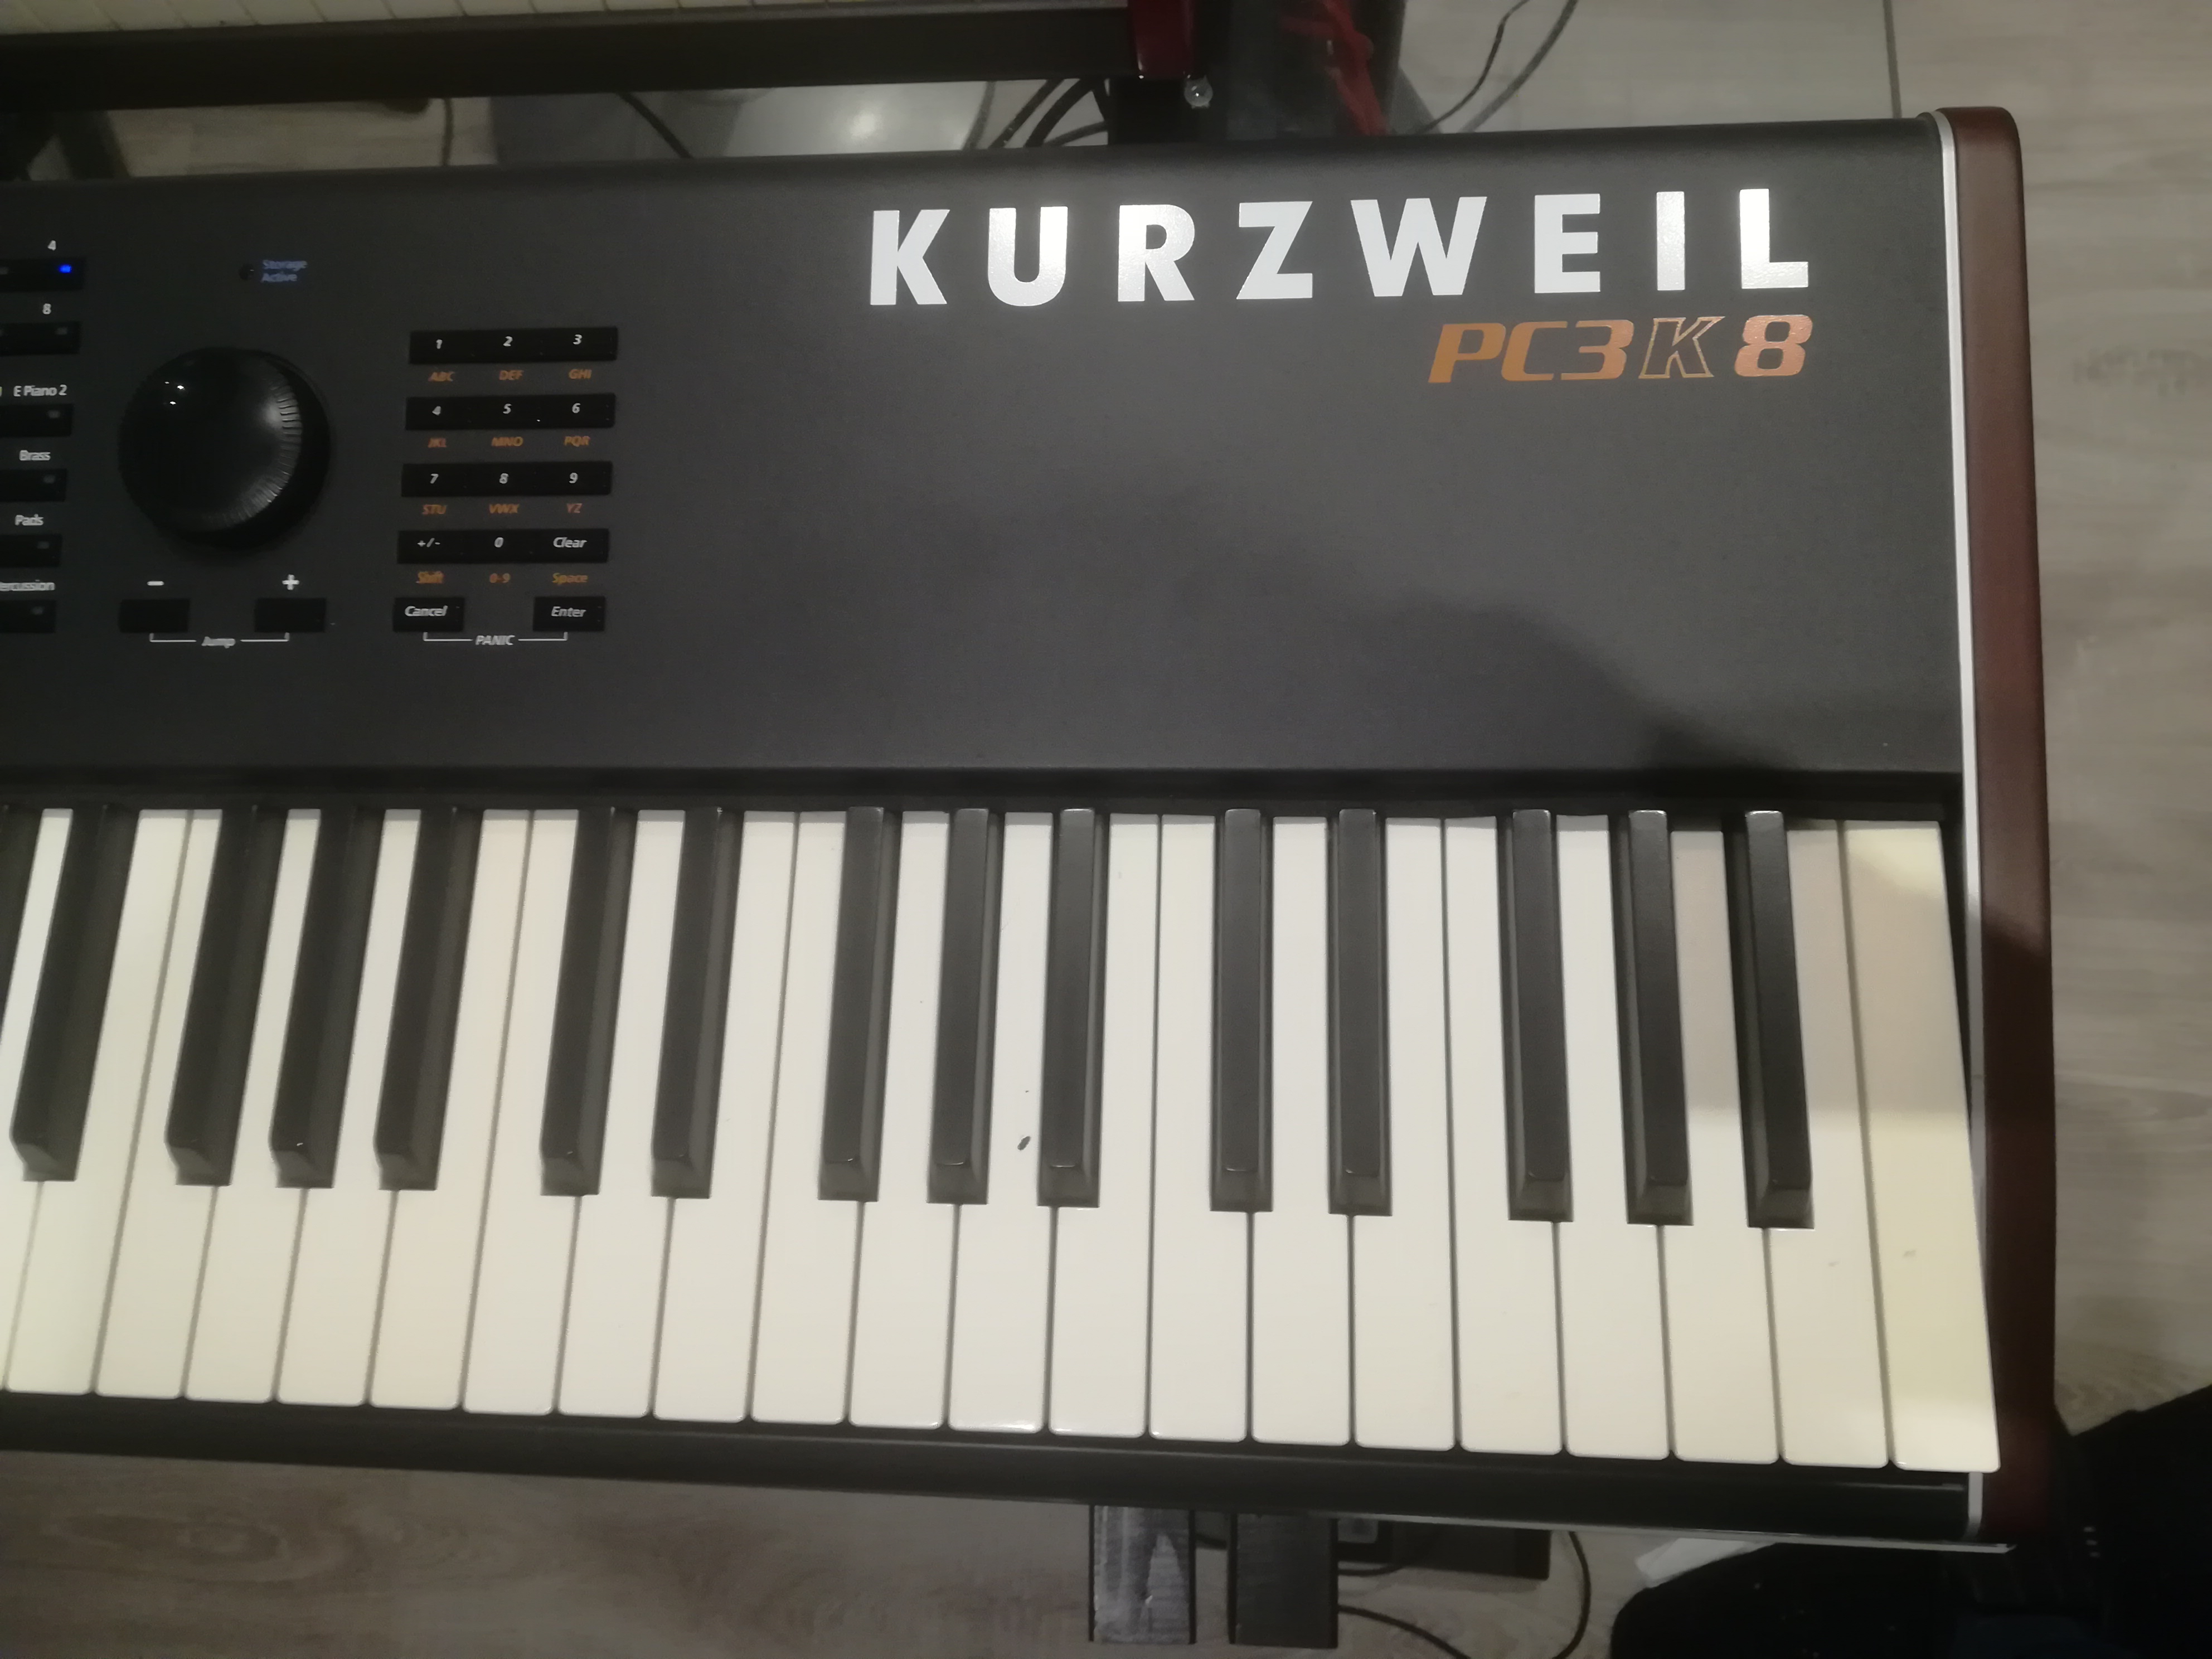 PC3K8 - Kurzweil PC3K8 - Audiofanzine